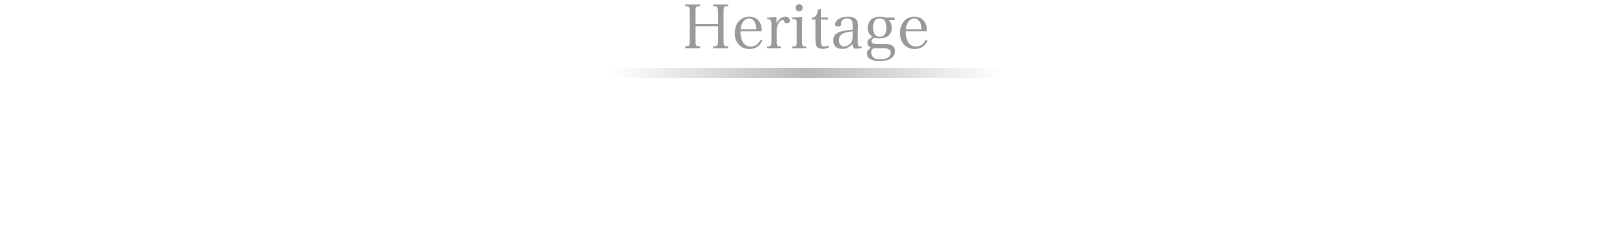 Heritage　高橋洋服店の軌跡